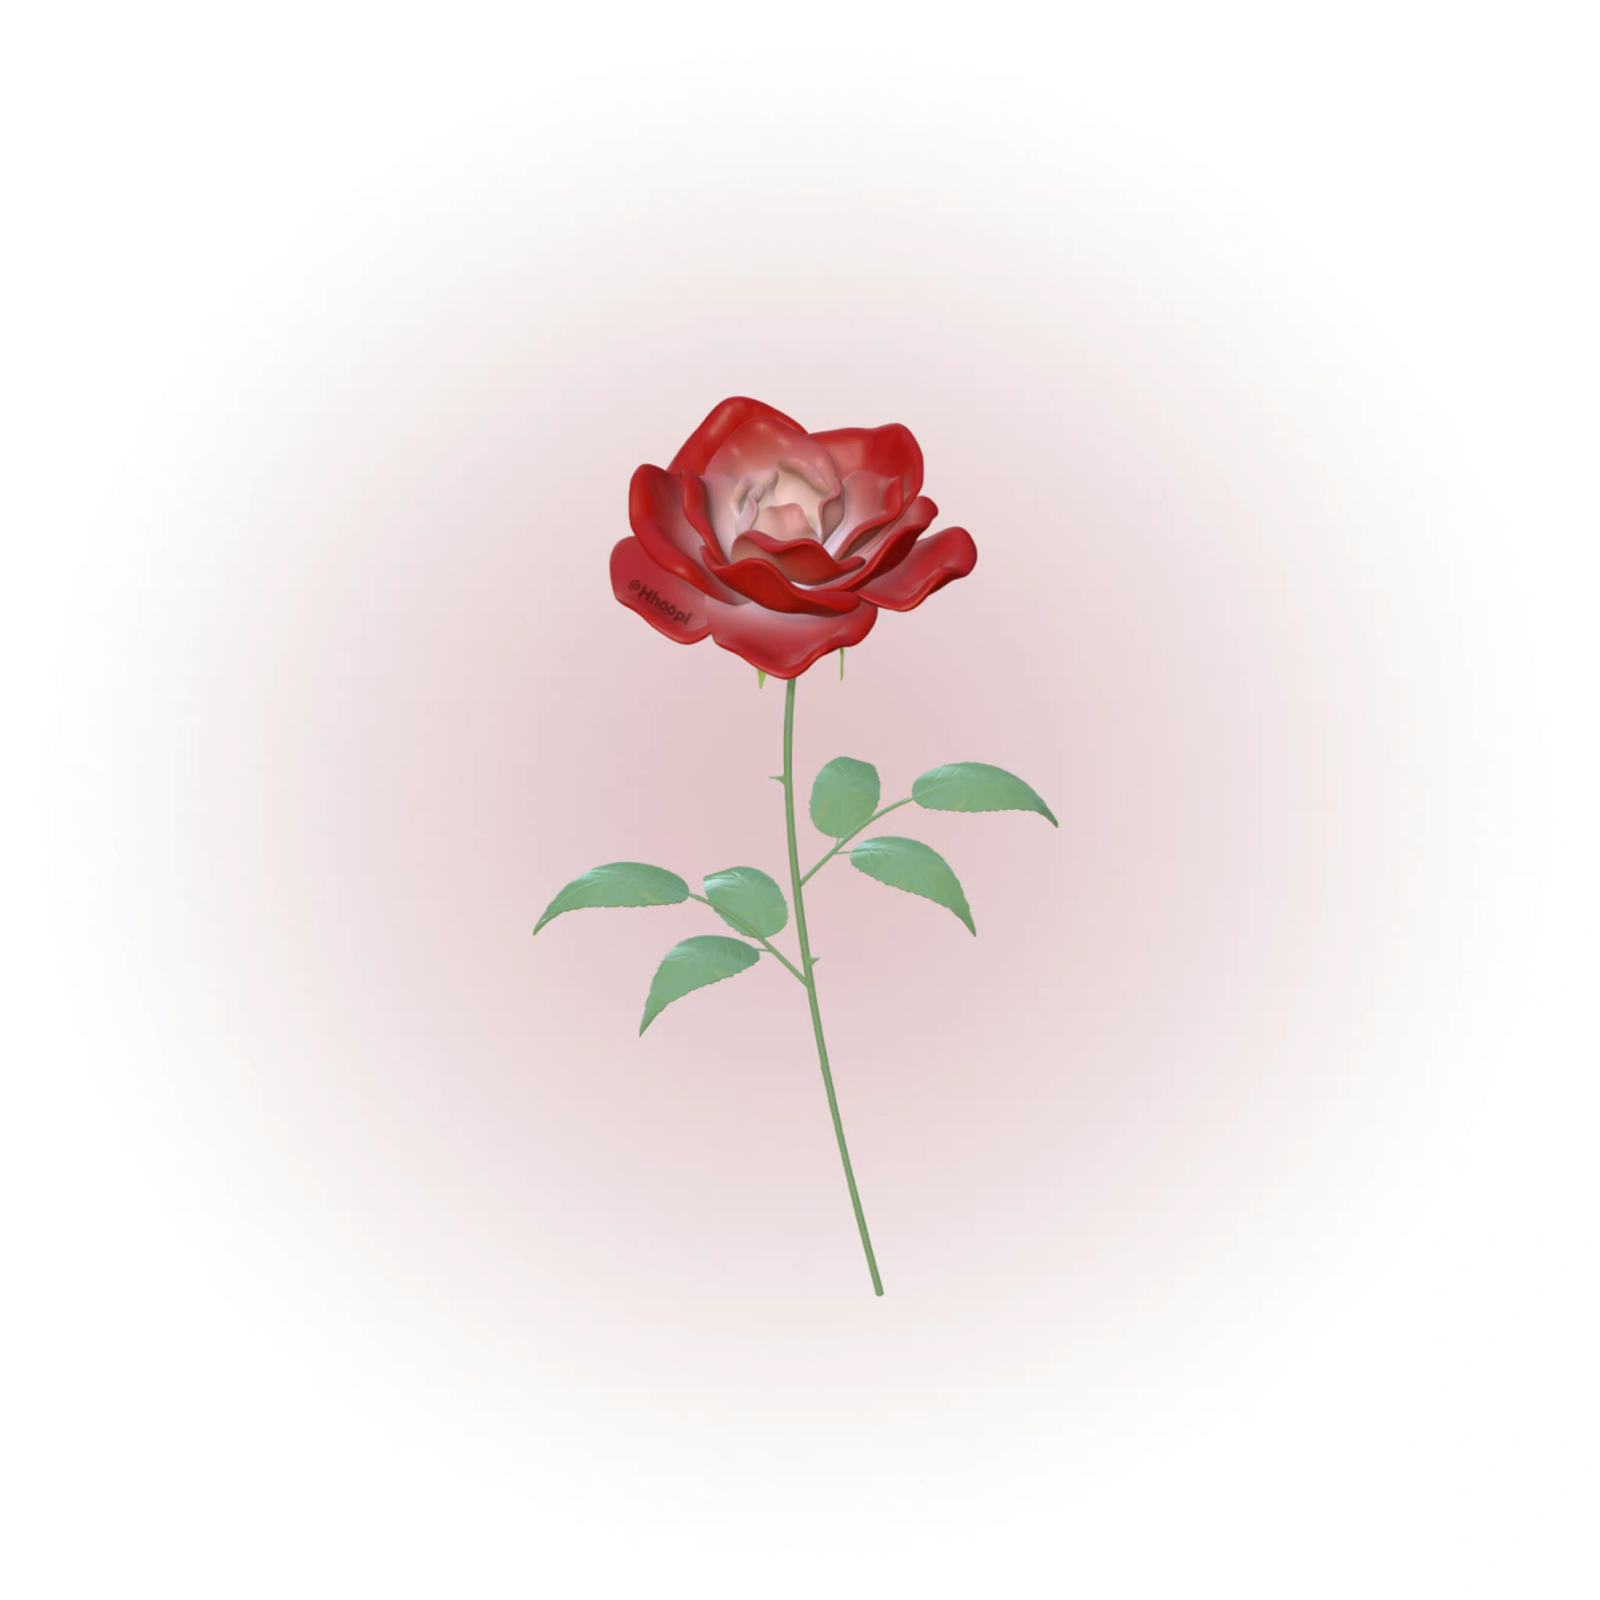 玫瑰花 红玫瑰 背景 头像 壁纸 - 高清图片，堆糖，美图壁纸兴趣社区